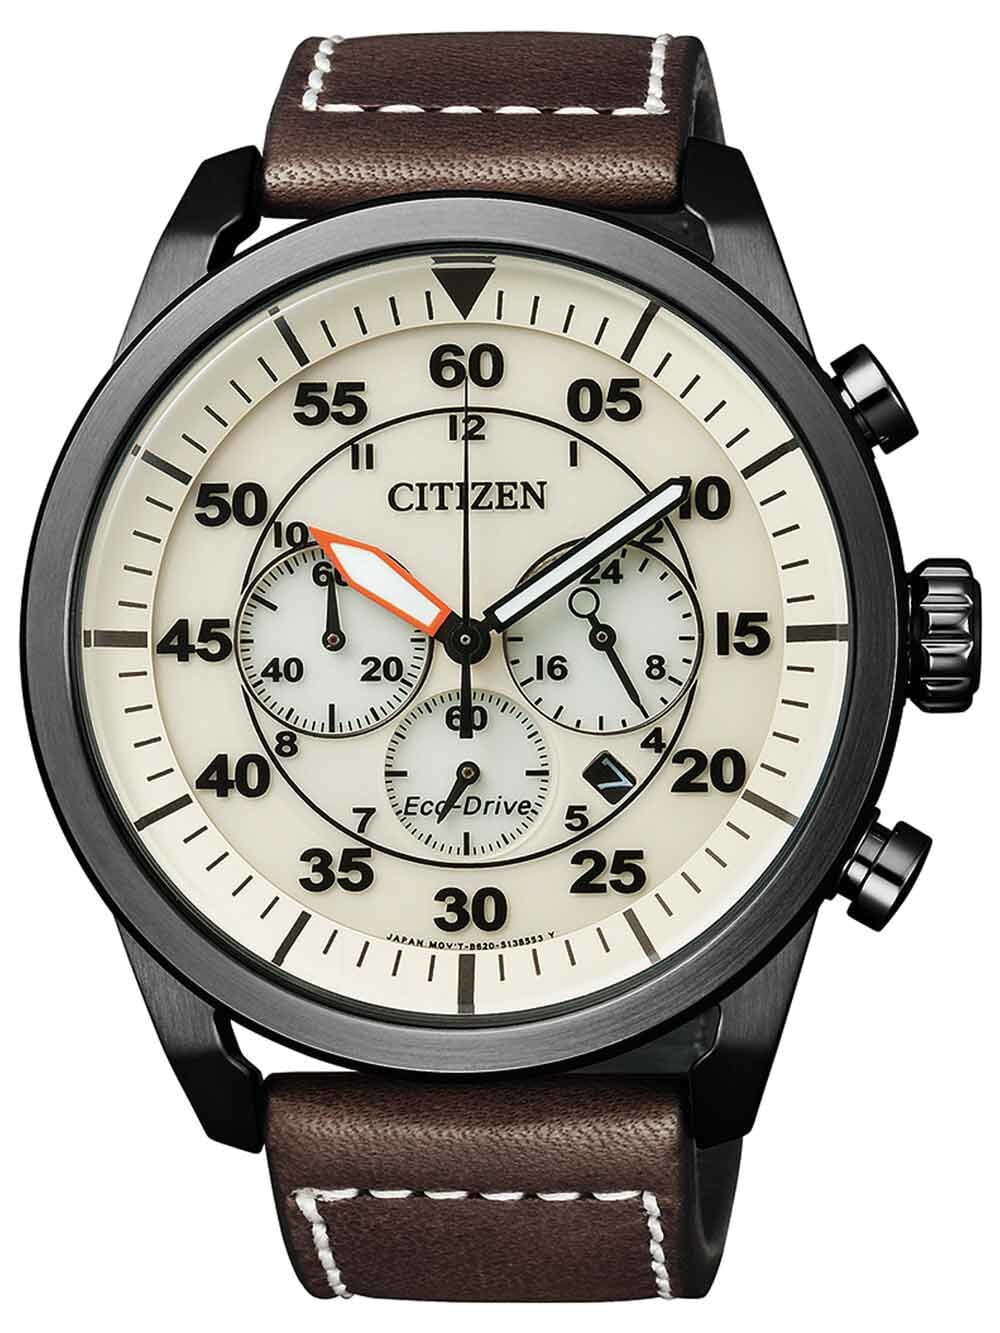 Мужские наручные часы с коричневым кожаным ремешком Citizen CA4215-04W Eco-Drive Sports Chronograph 45mm 10 ATM